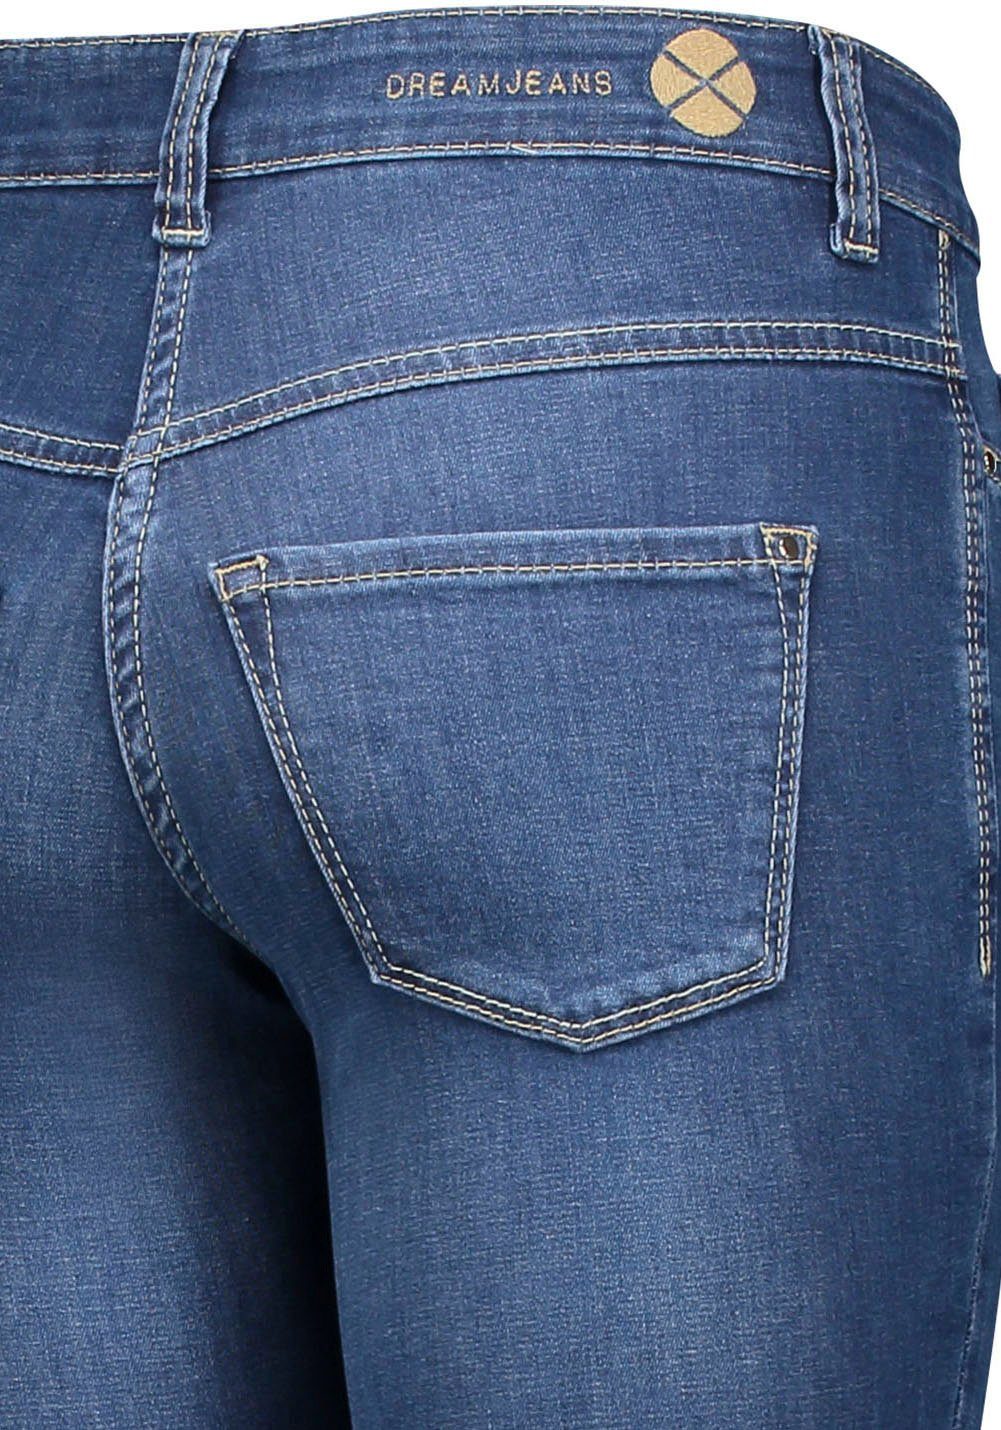 den für Skinny mid perfekten authentic Qualität Hochelastische Dream wash MAC Skinny-fit-Jeans blue Sitz sorgt